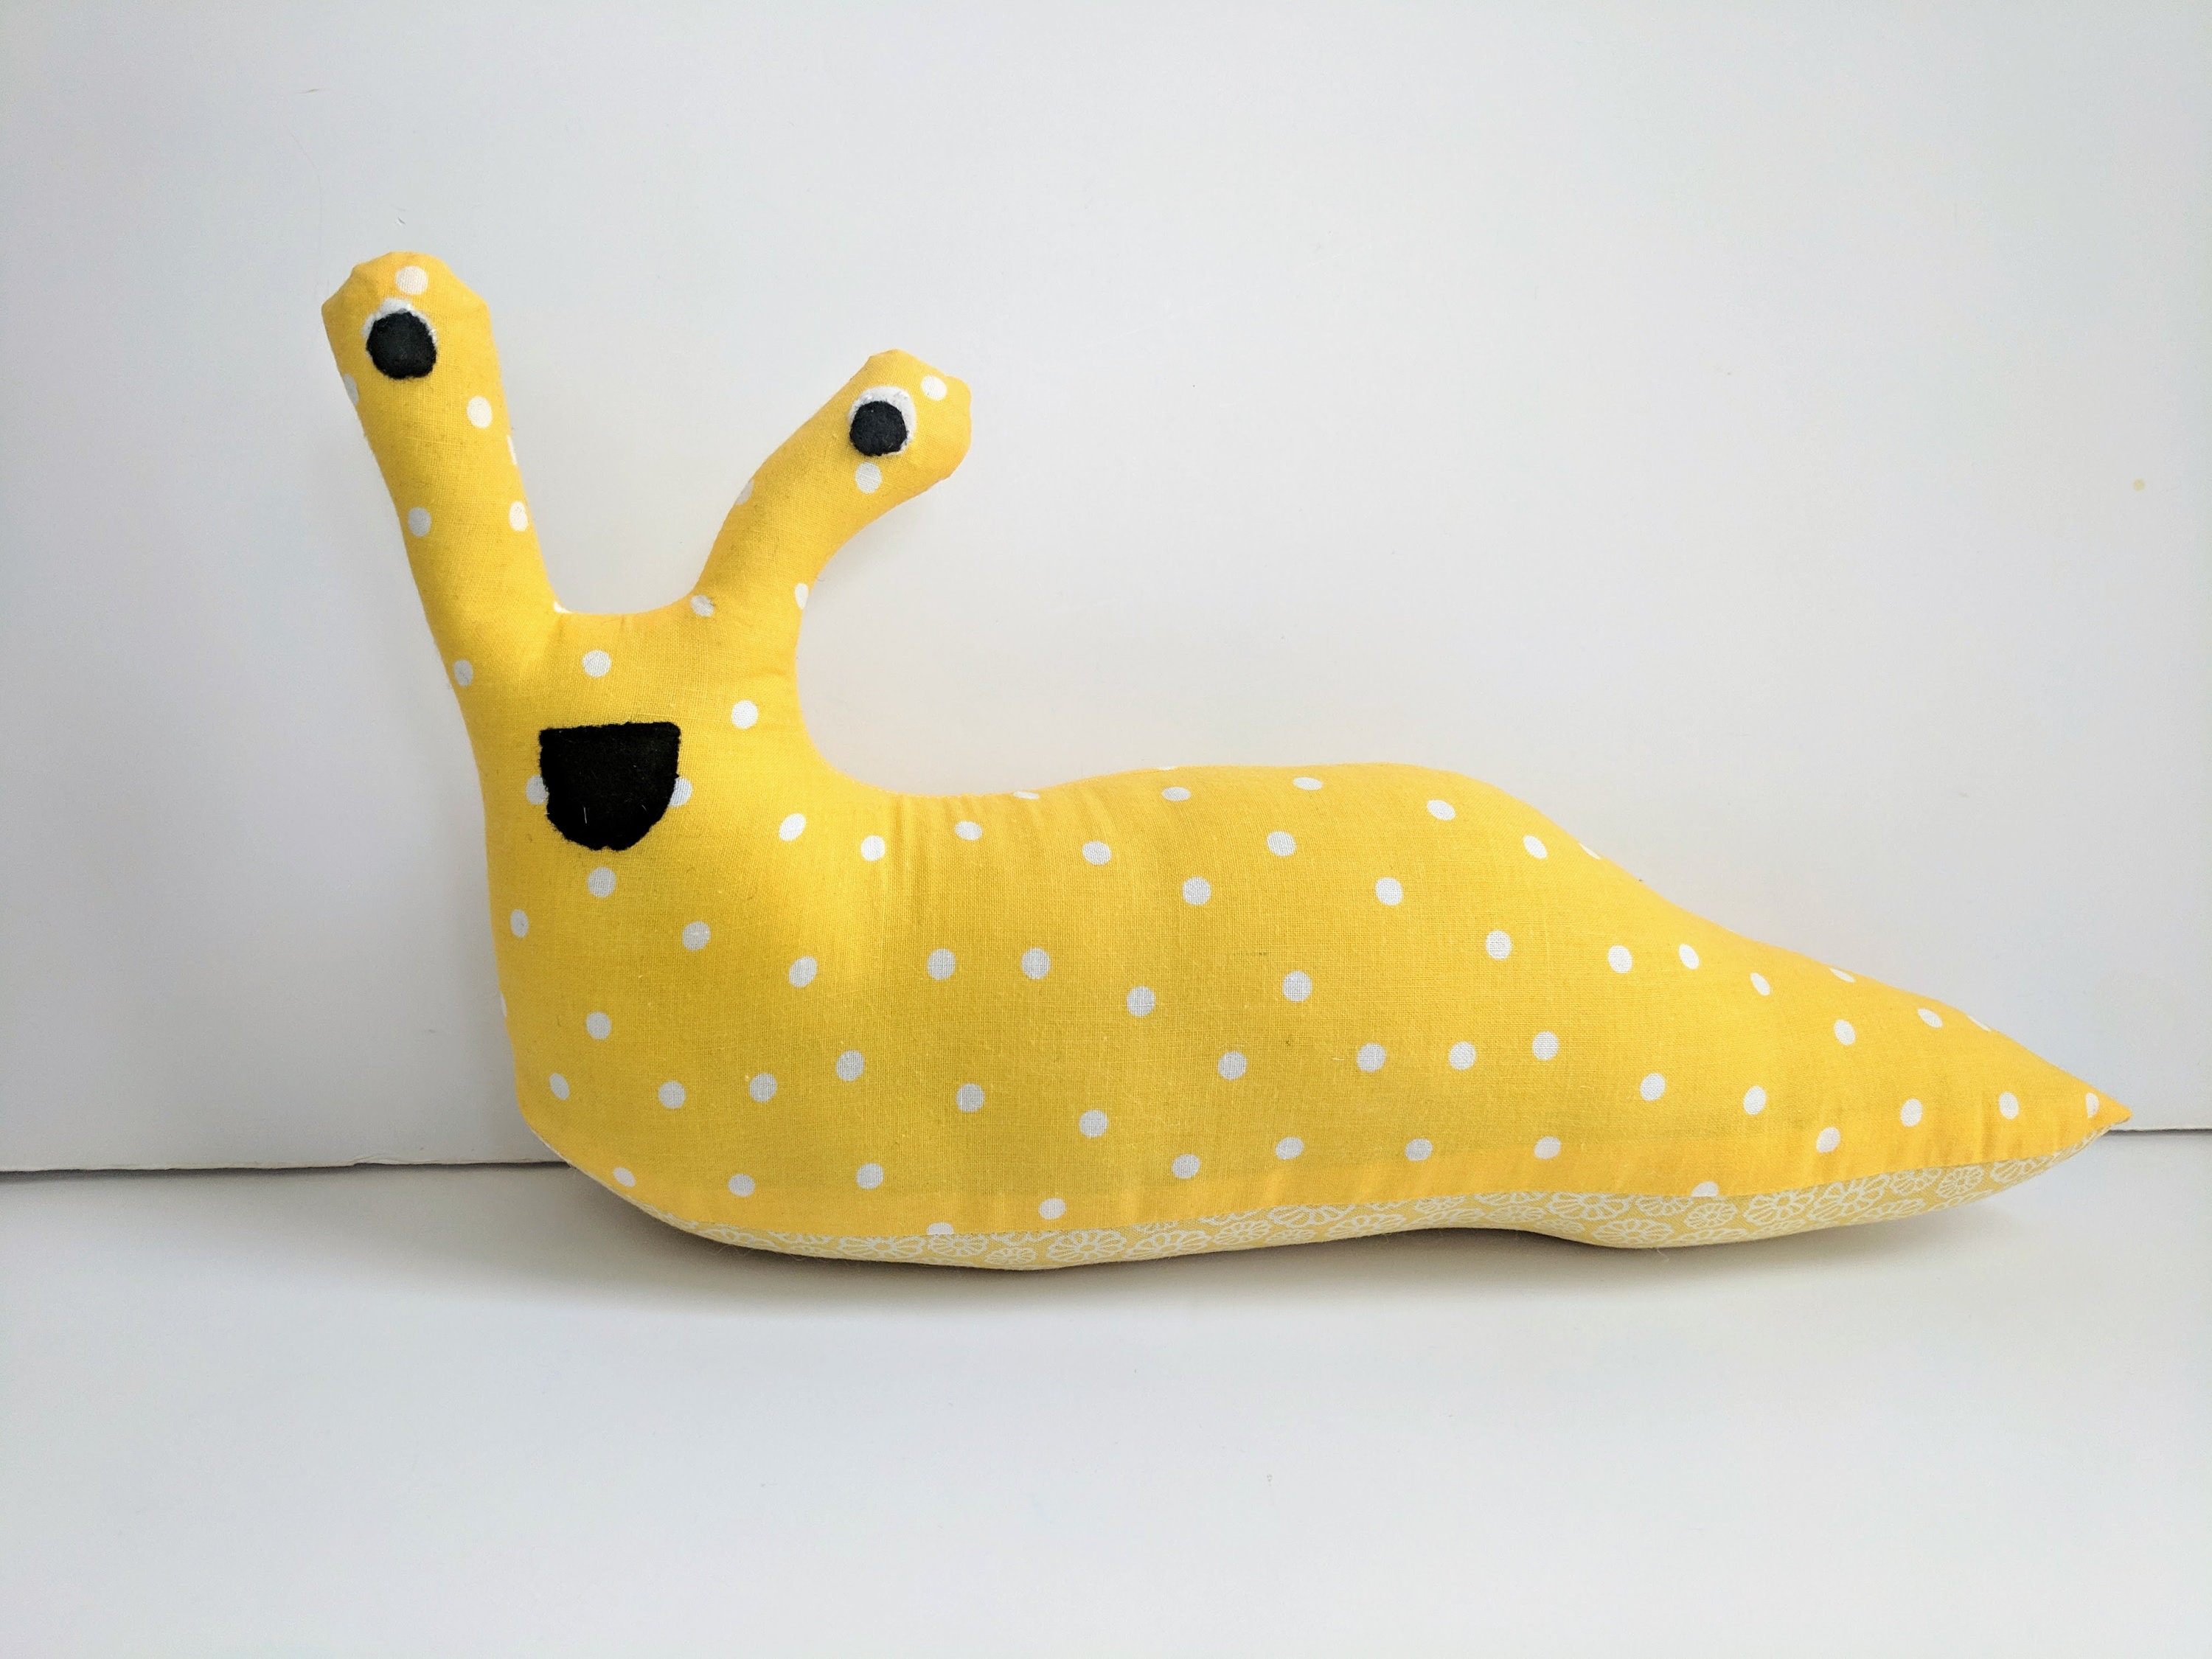 Yellow Banana Slug Plush / Yellow Stuffed Animal Banana Slug picture pic